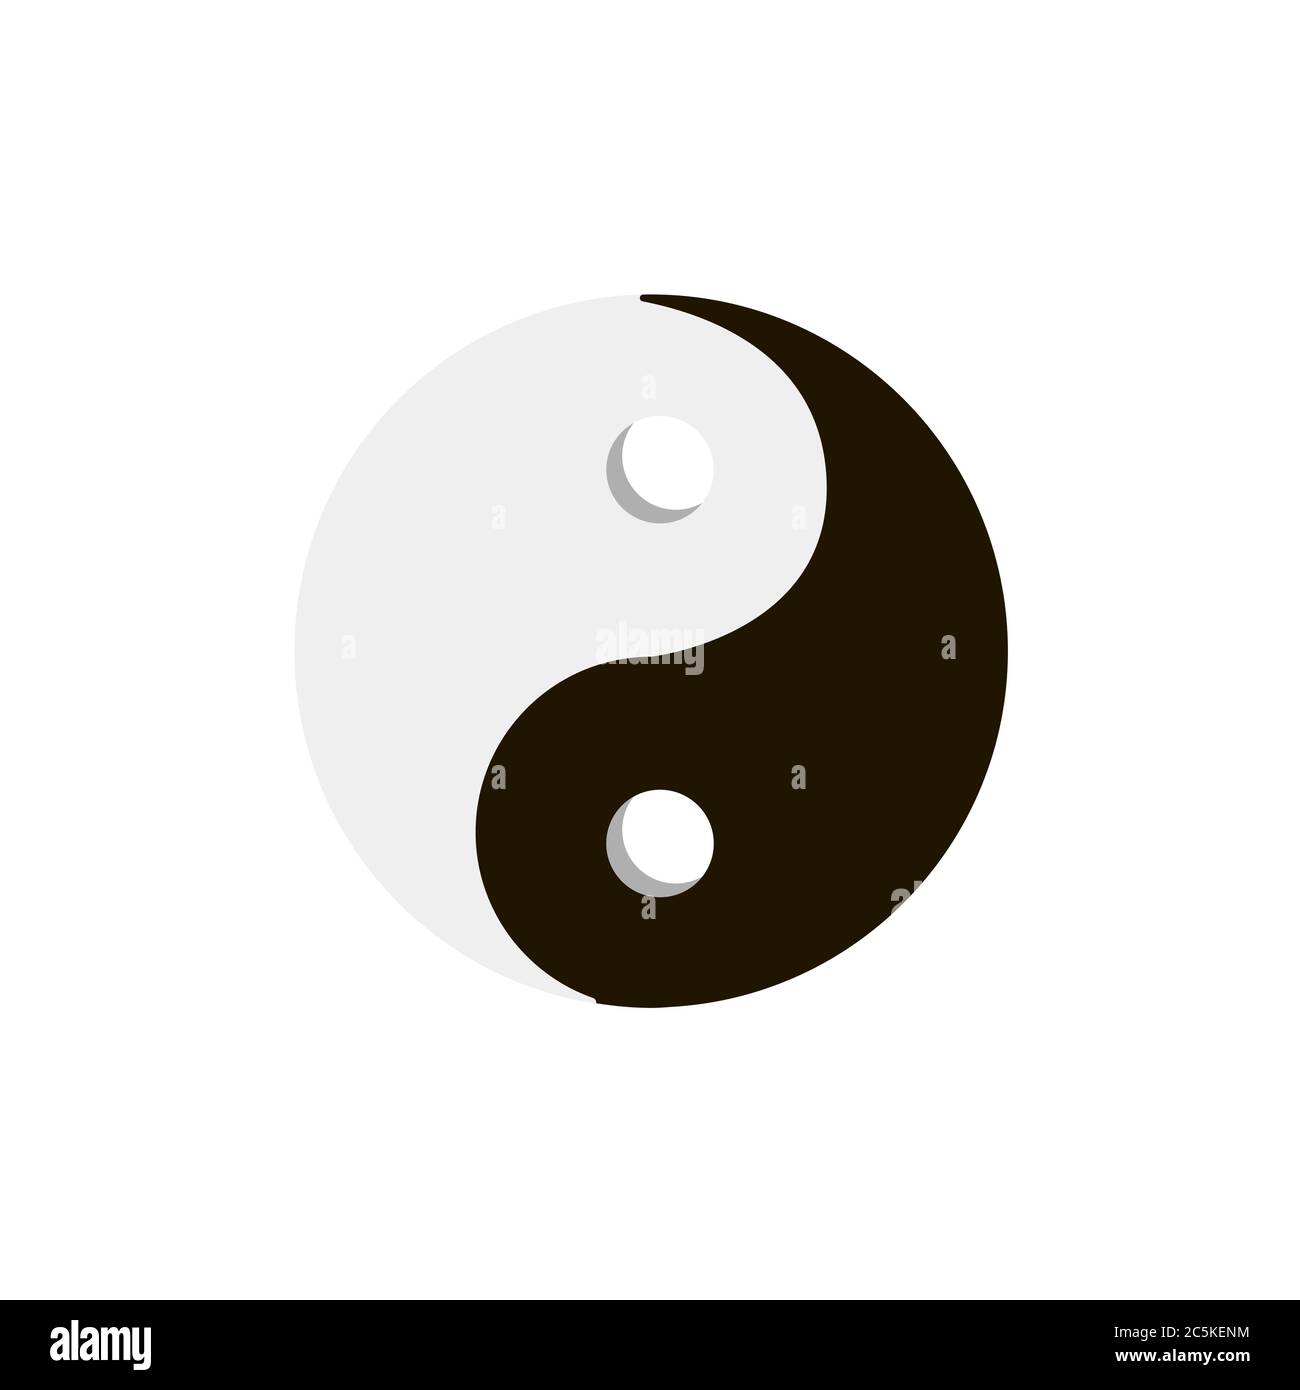 Simbolo Yin Yang su sfondo bianco. Illustrazione vettoriale in stile piatto alla moda. EPS 10 Illustrazione Vettoriale